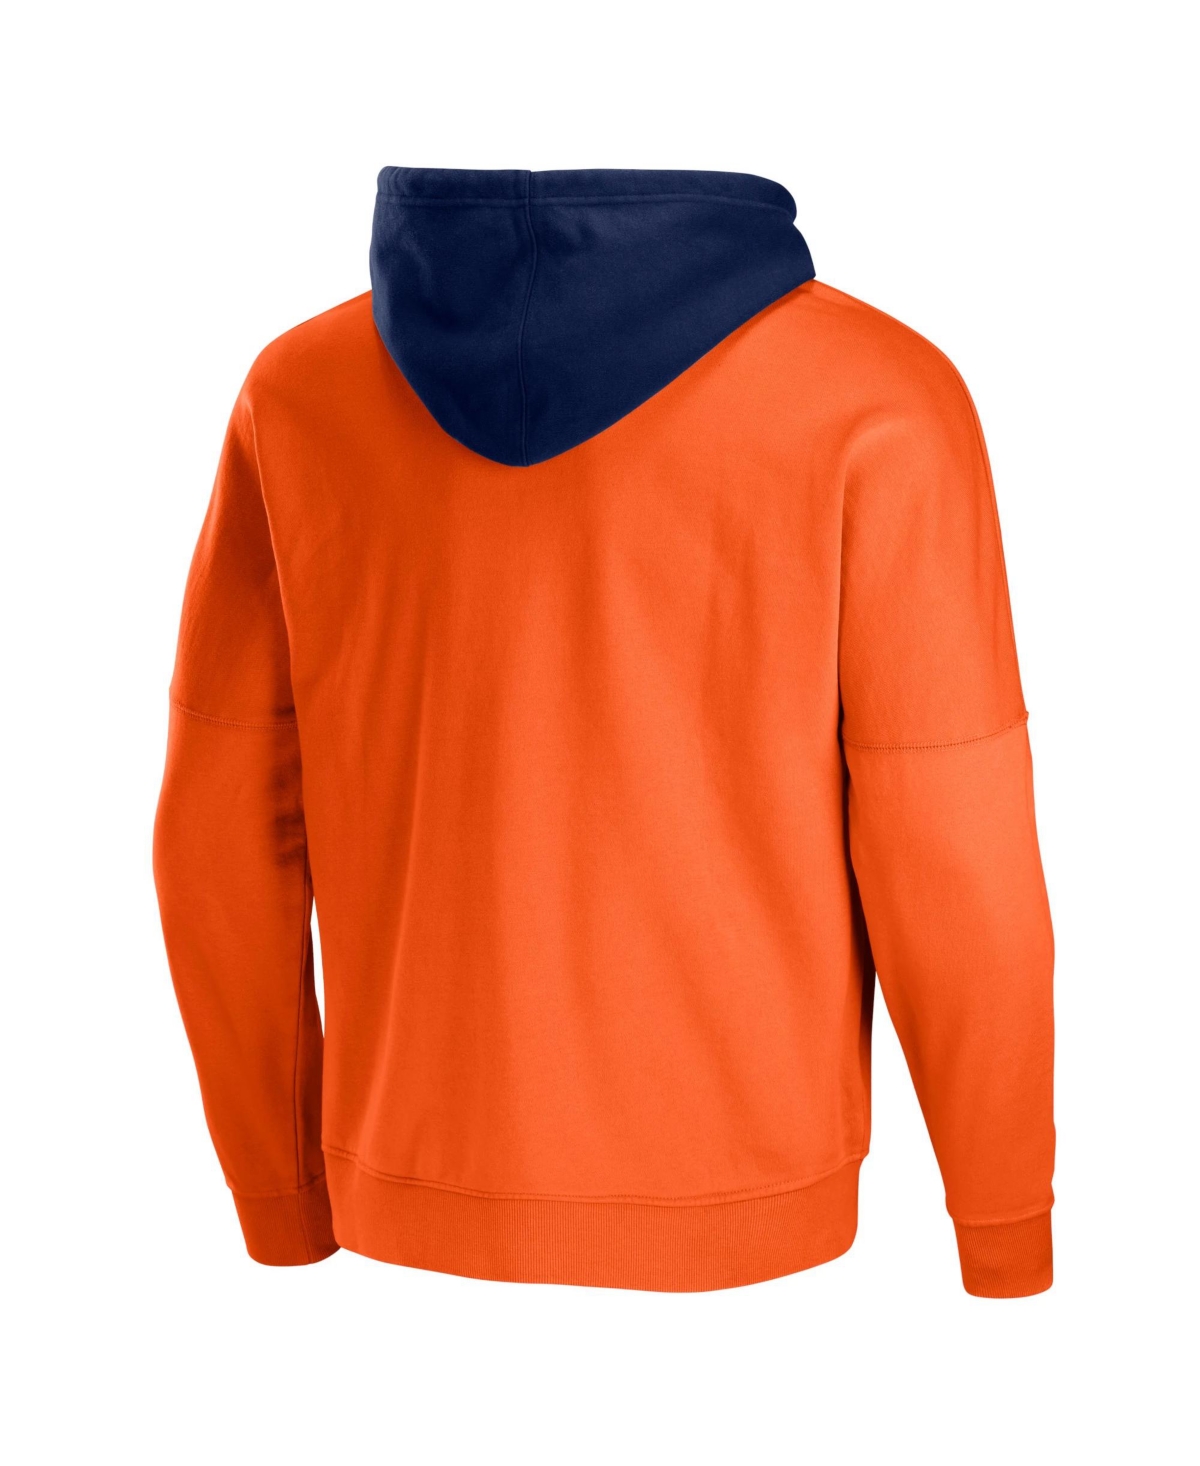 Shop Nfl Properties Men's Nfl X Staple Orange Denver Broncos Oversized Gridiron Vintage-like Wash Pullover Hoodie